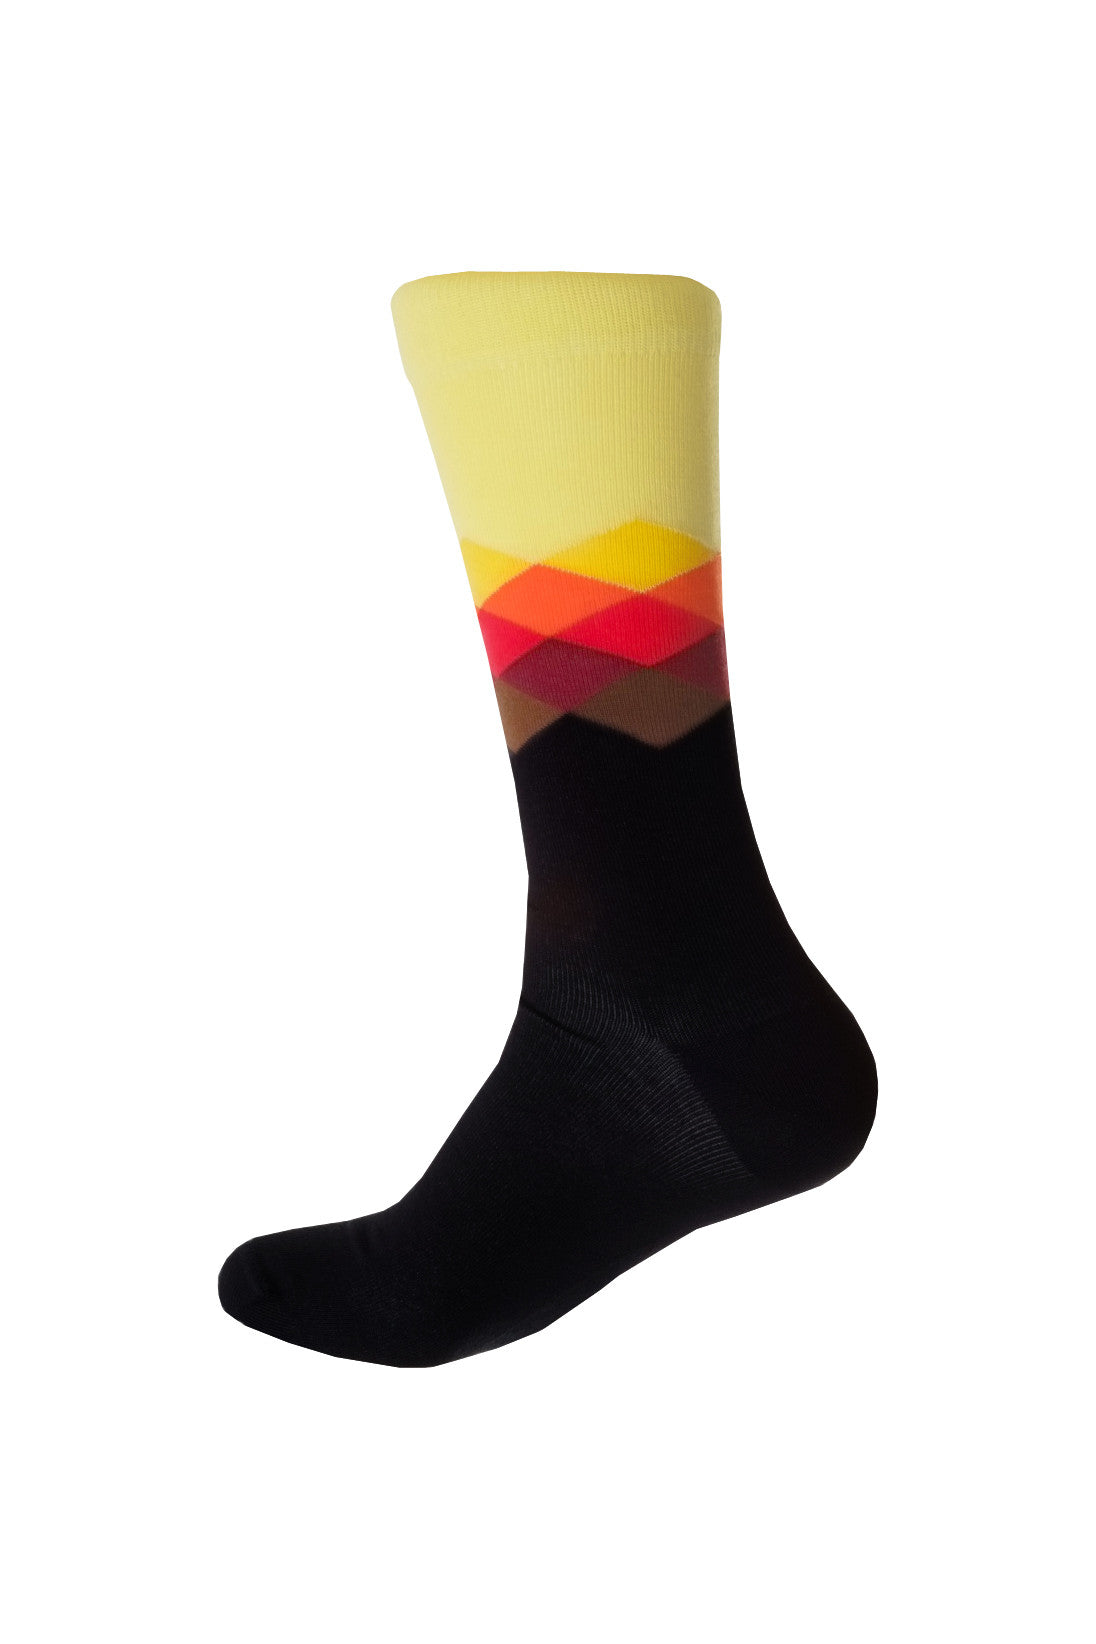 Giraffe Cool | Kaleidoscope Black Yellow Orange Brushed Cotton Socks Foot Back